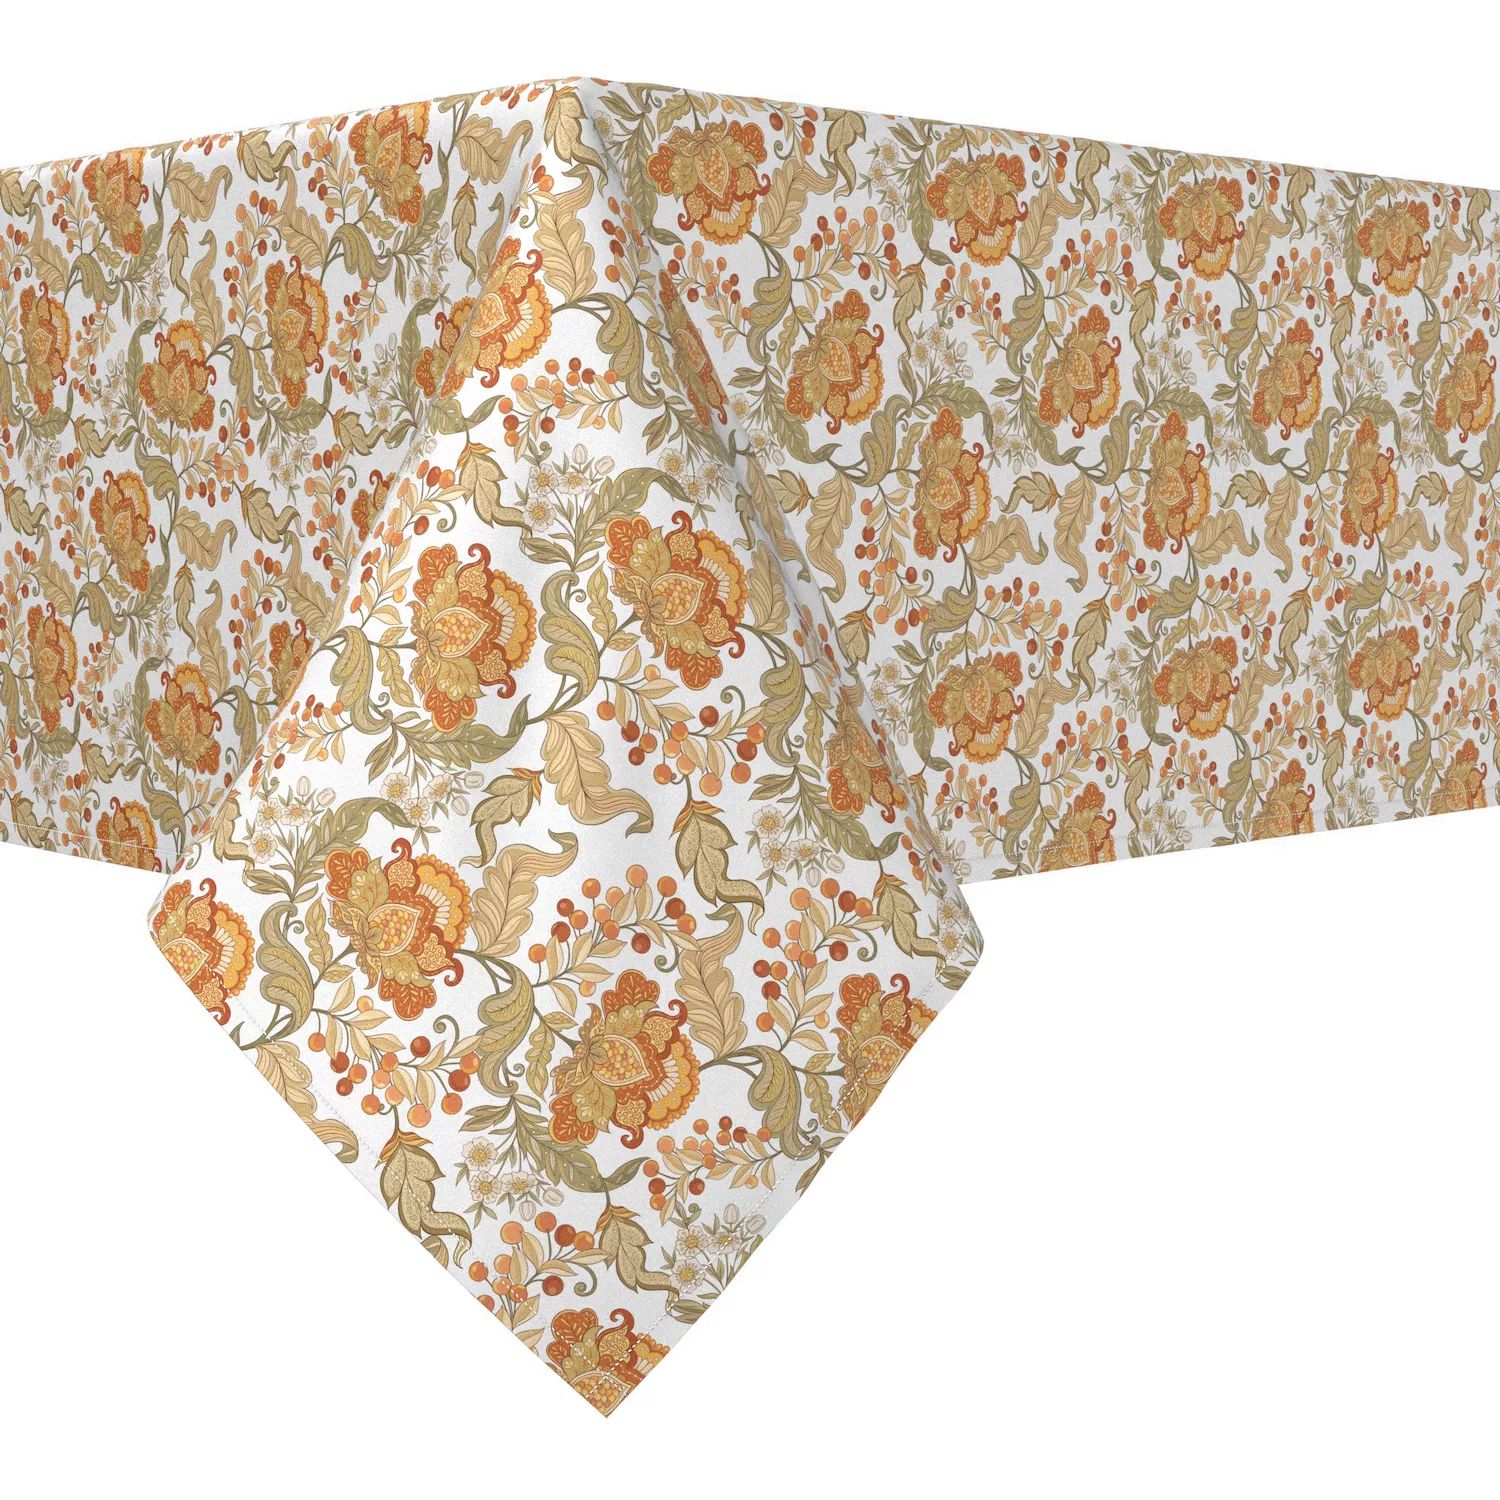 Прямоугольная скатерть, 100 % хлопок, 60х84 дюйма, с цветочным принтом в винтажном стиле. прямоугольная скатерть 100 % хлопок 60х84 дюйма с цветочным принтом в винтажном стиле